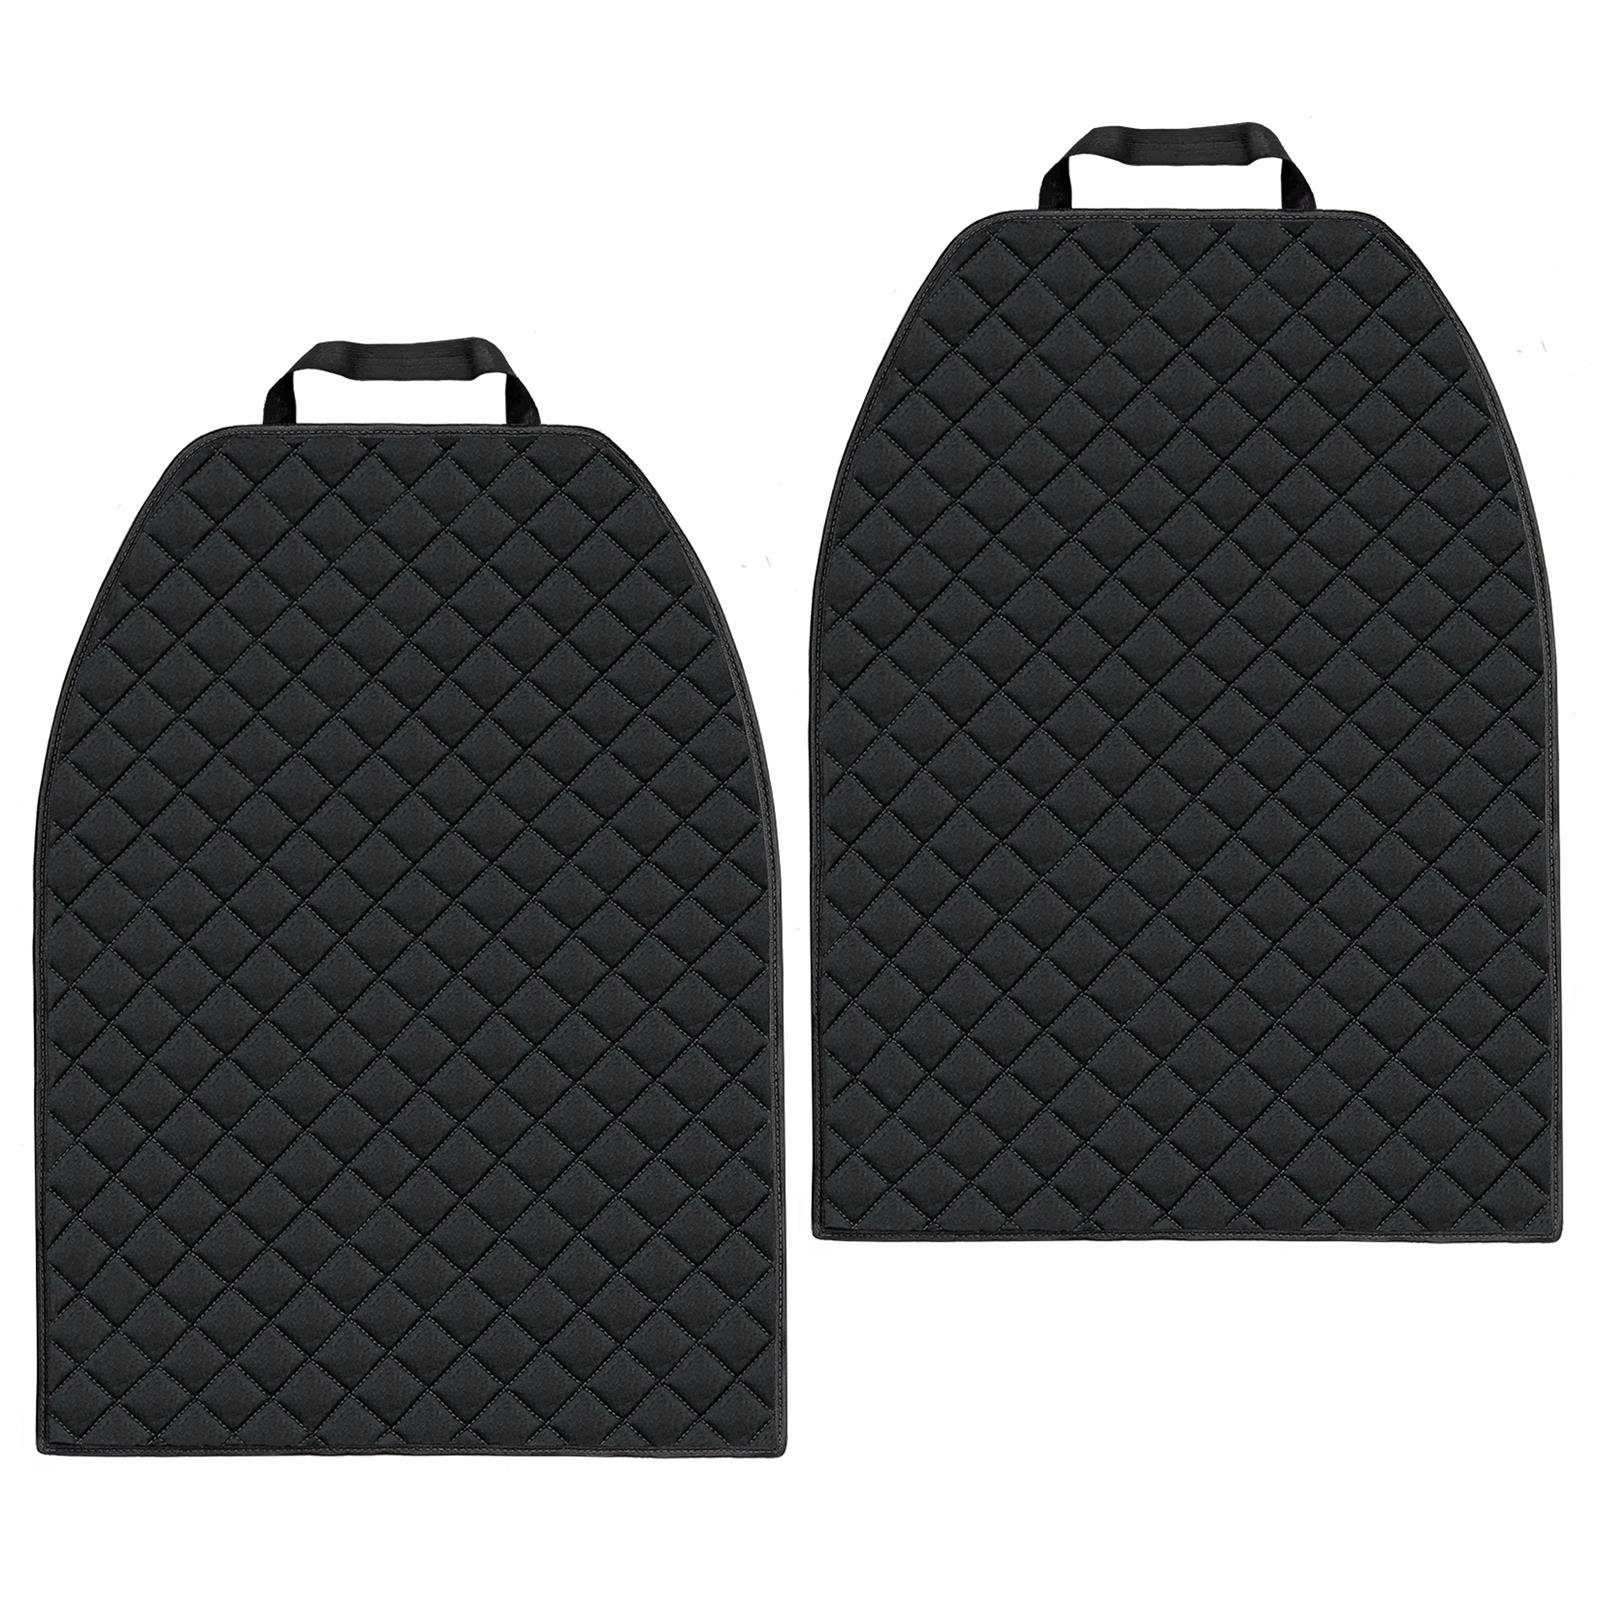 L & P Car Design Auto-Rückenlehnenschutz Rückenlehnenschoner in schwarz aus Cordura Material Sitzschoner, 2 Stück